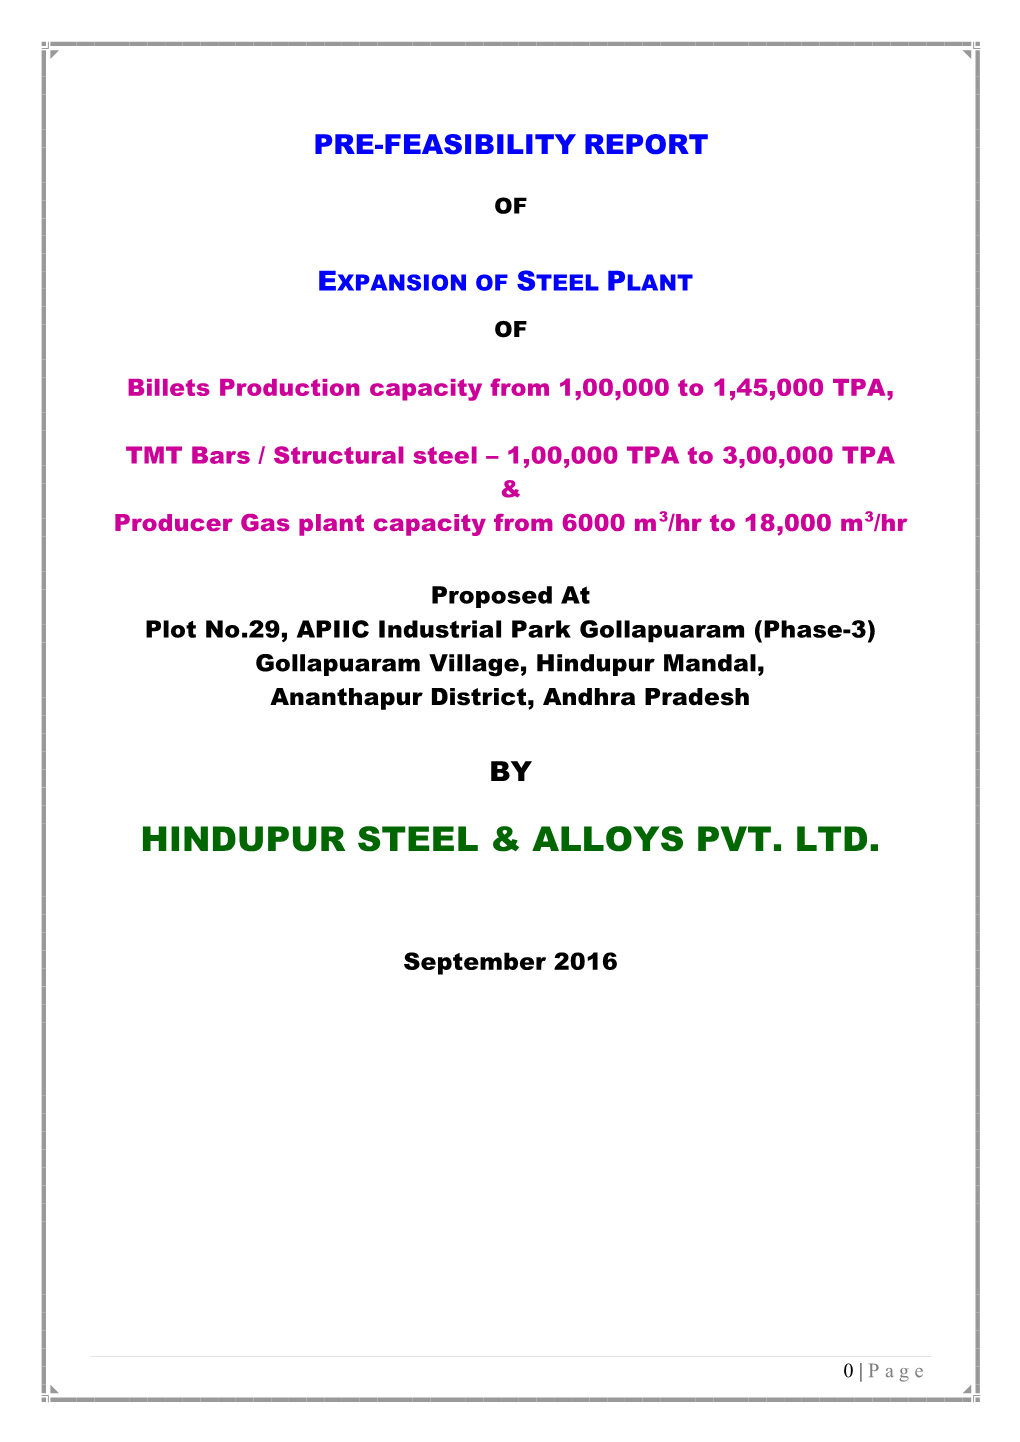 Hindupur Steel & Alloys Pvt. Ltd